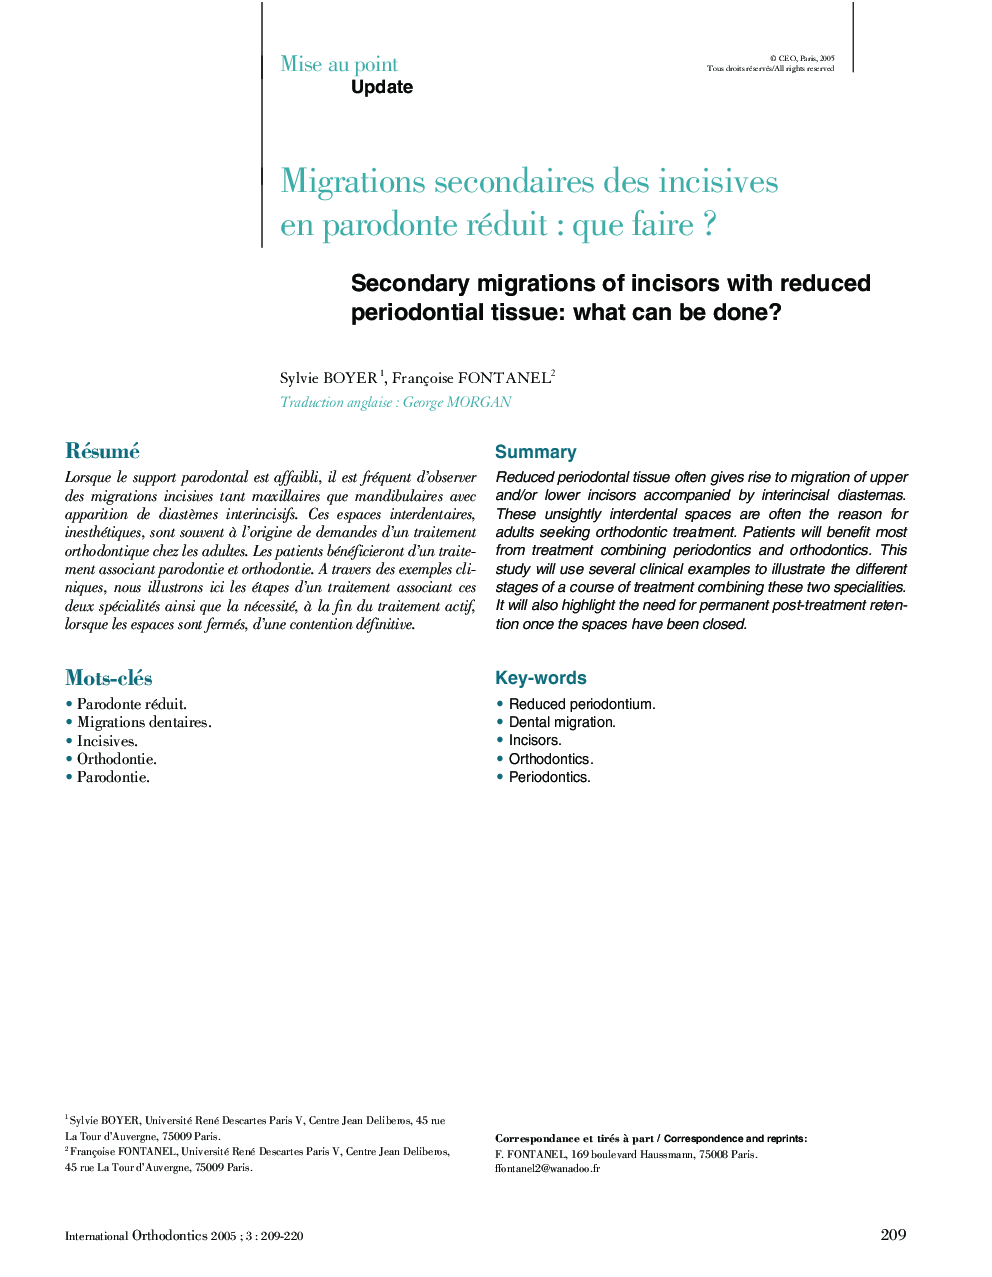 Migrations secondaires des incisives en parodonte réduit : que faire ?